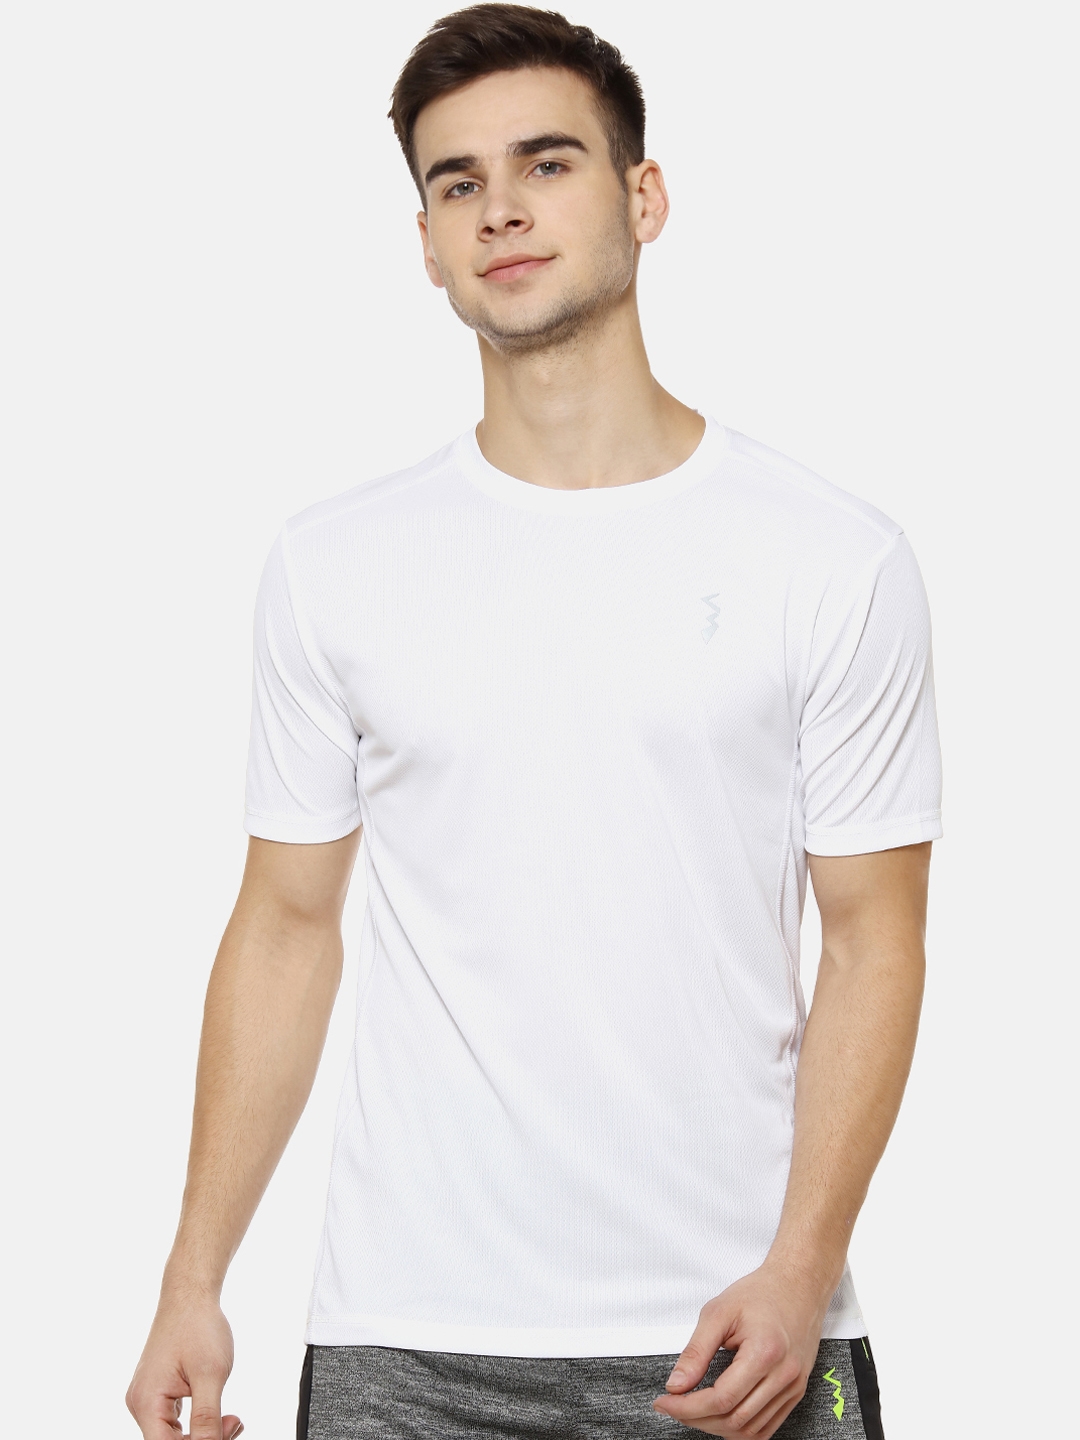 Campus Sutra Men White Solid Round Neck T shirt